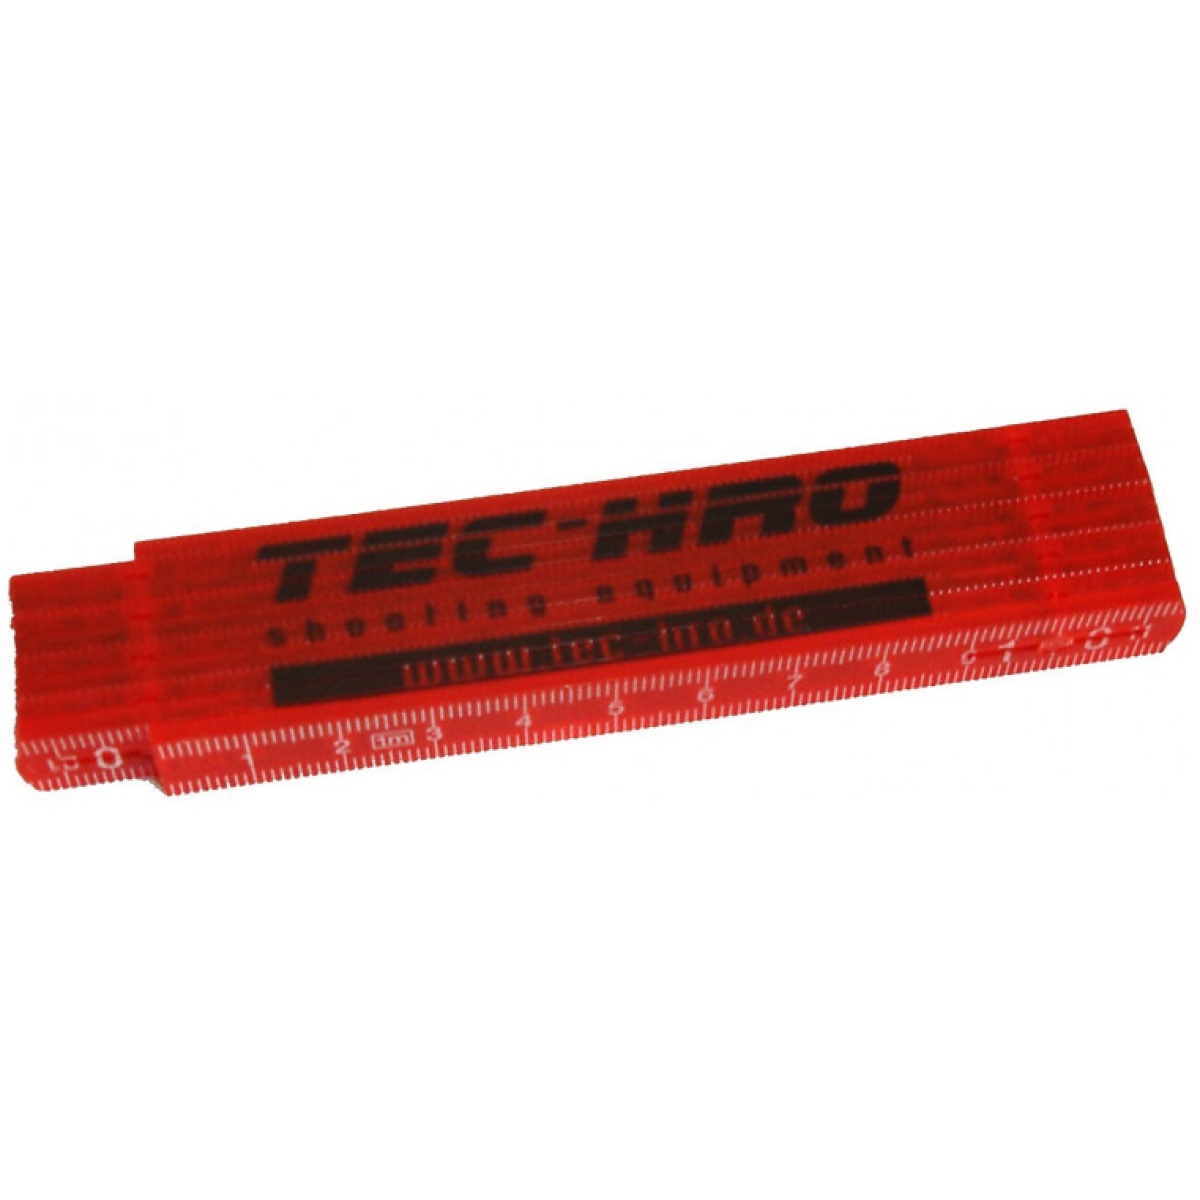 TEC-HRO meter stick